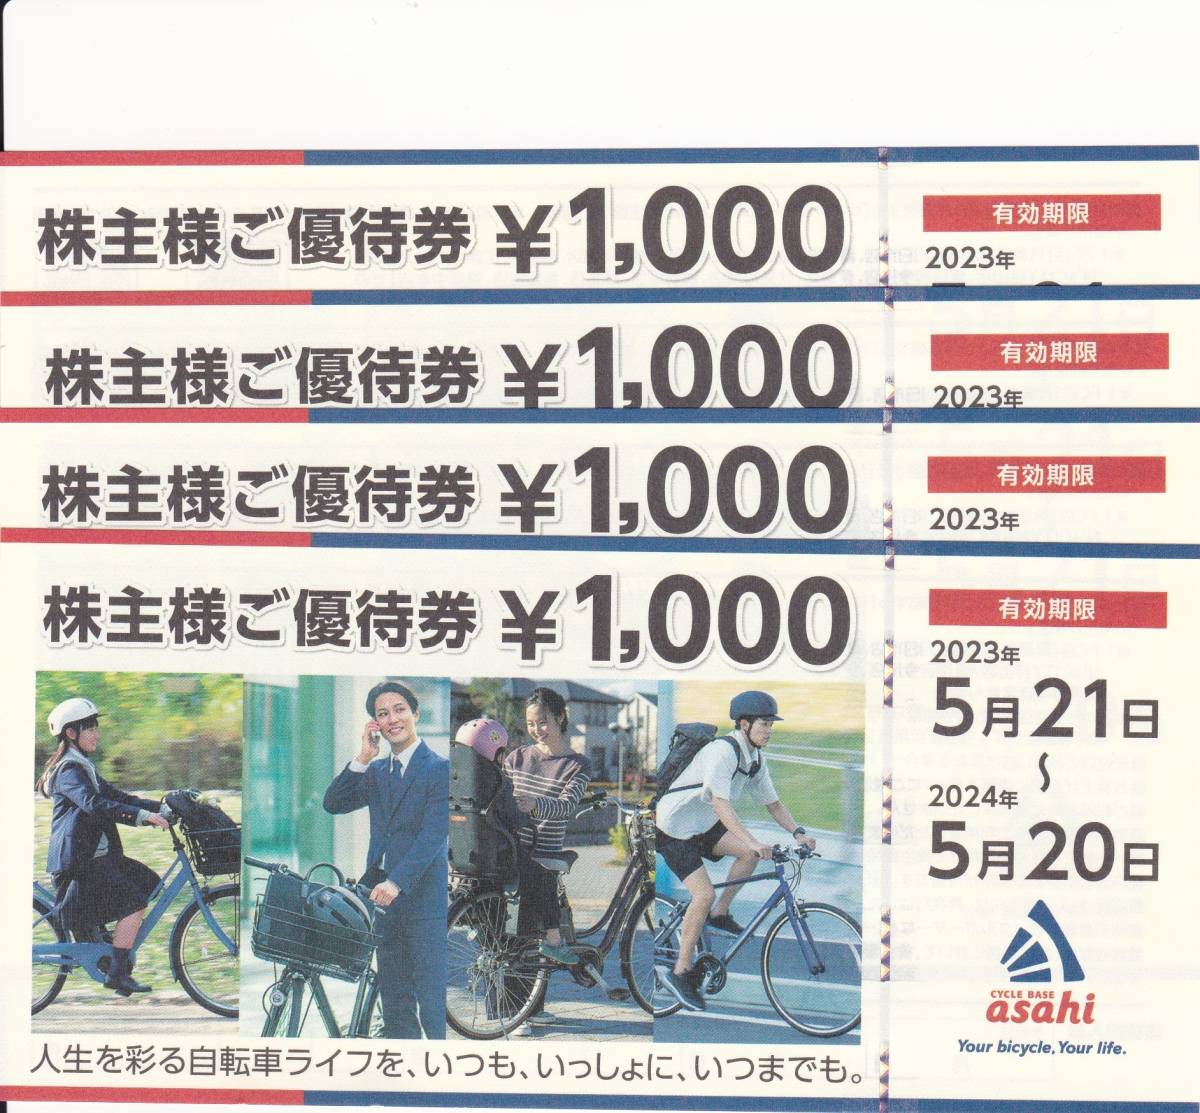 あさひ 株主優待券4,000円分 サイクルベースあさひ asahi 自転車 送料